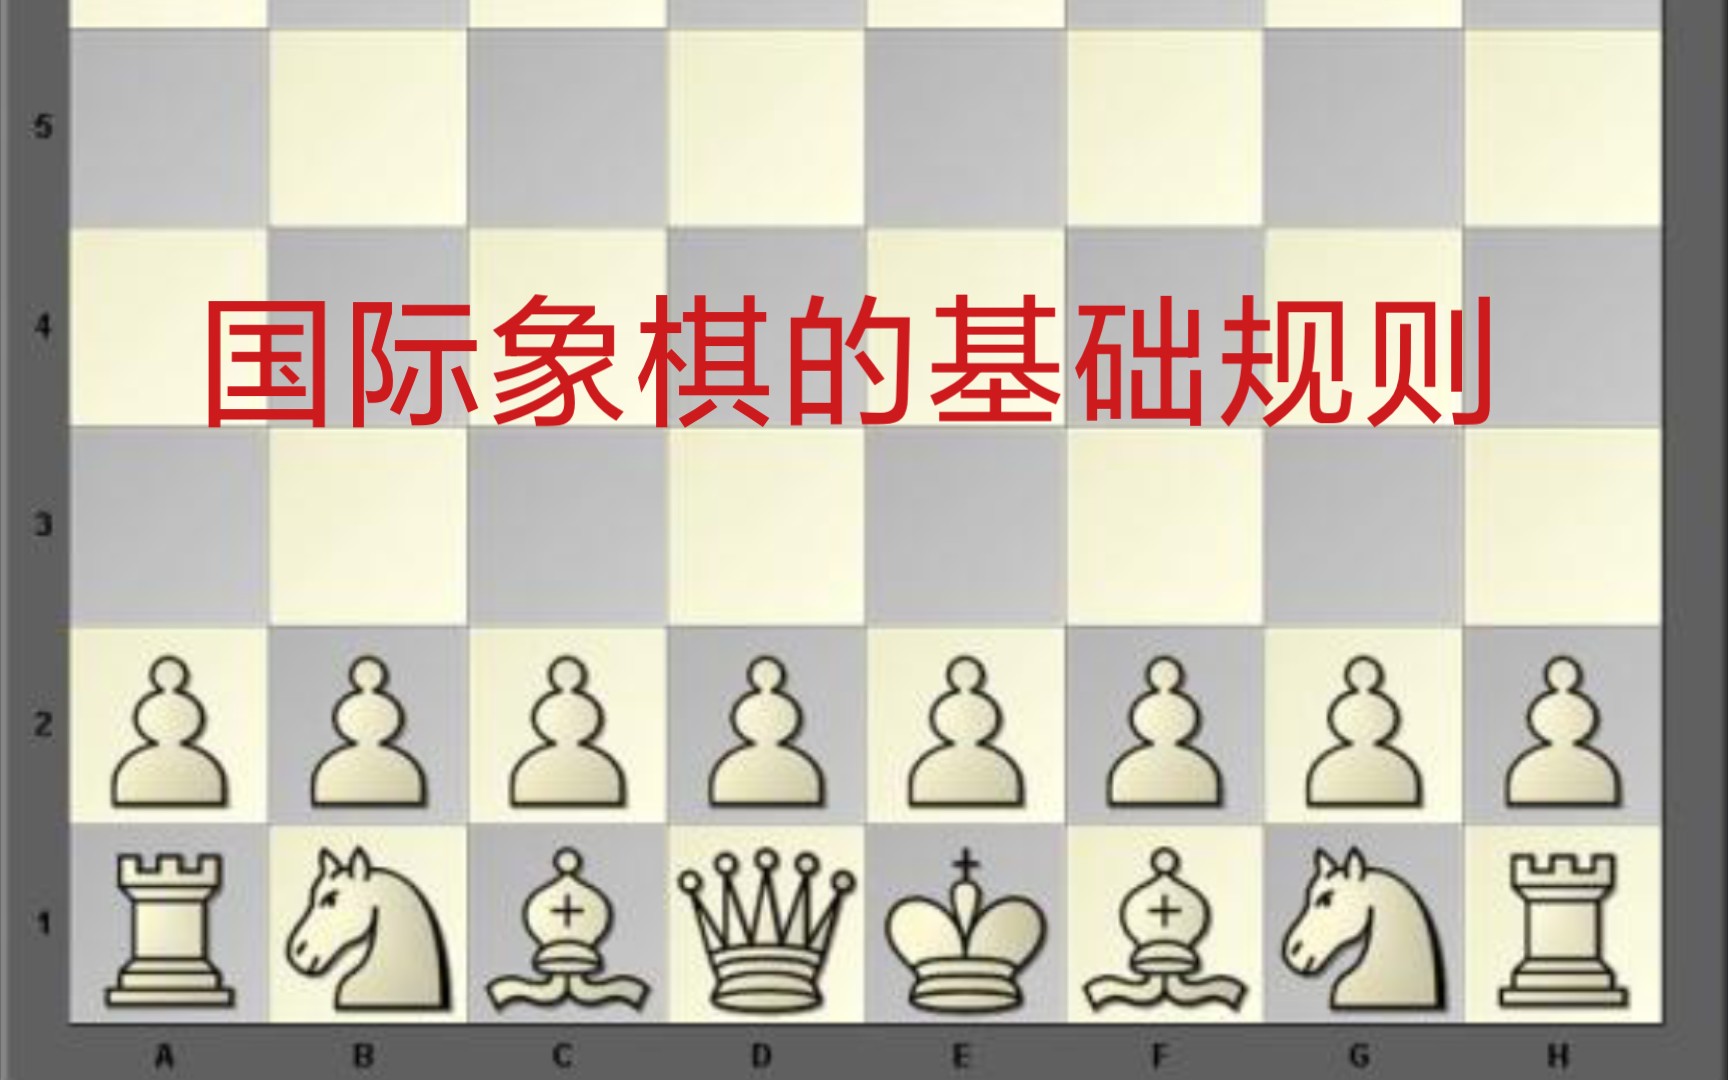 国际象棋名称图解图片